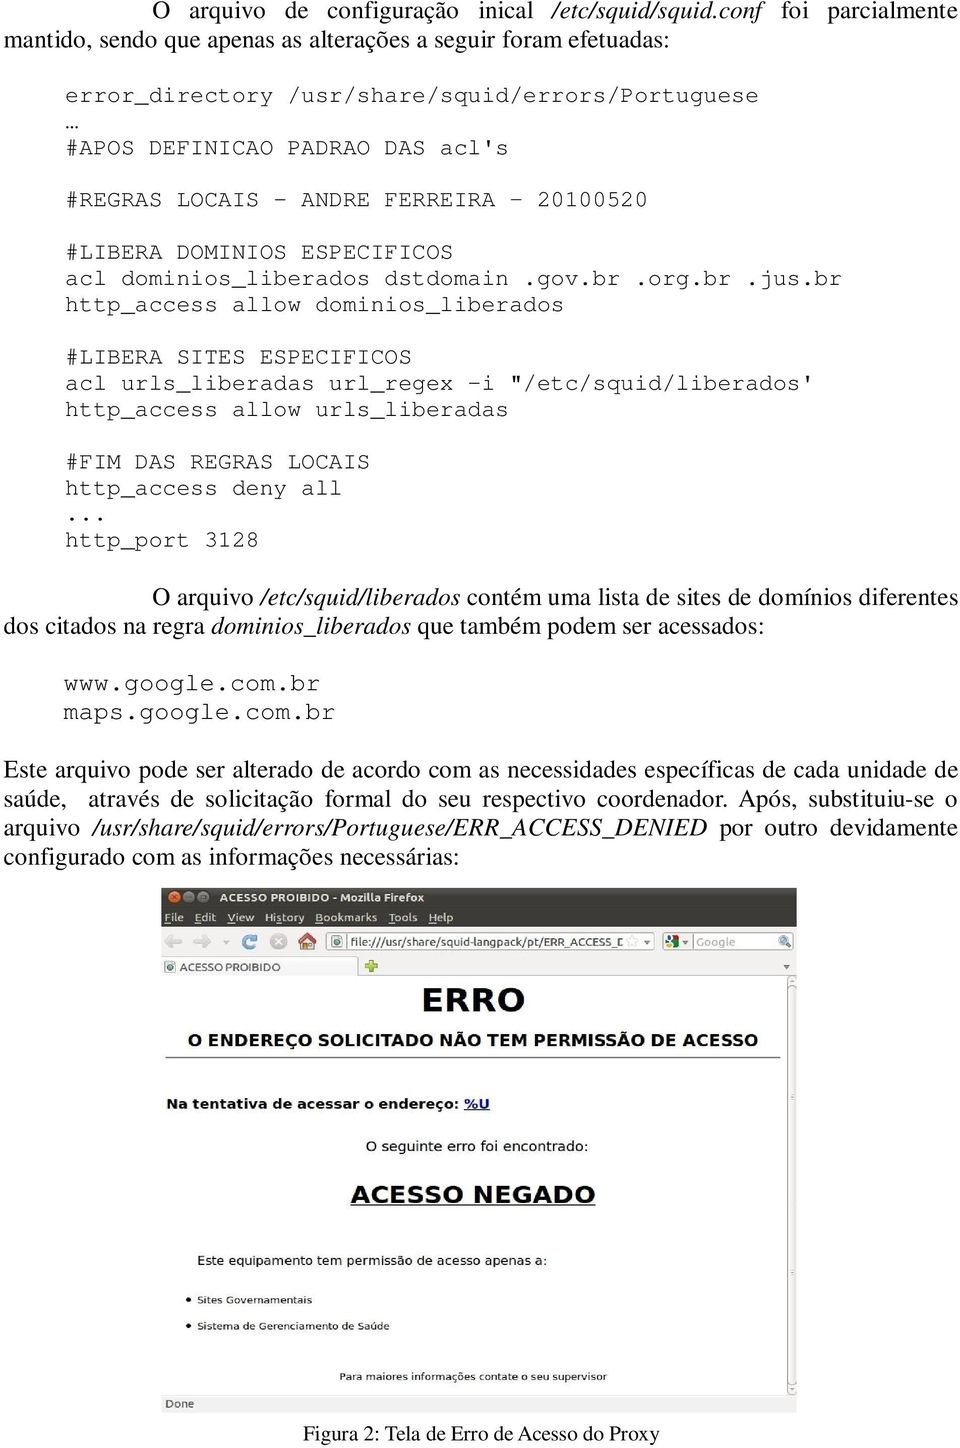 FERREIRA 20100520 #LIBERA DOMINIOS ESPECIFICOS acl dominios_liberados dstdomain.gov.br.org.br.jus.